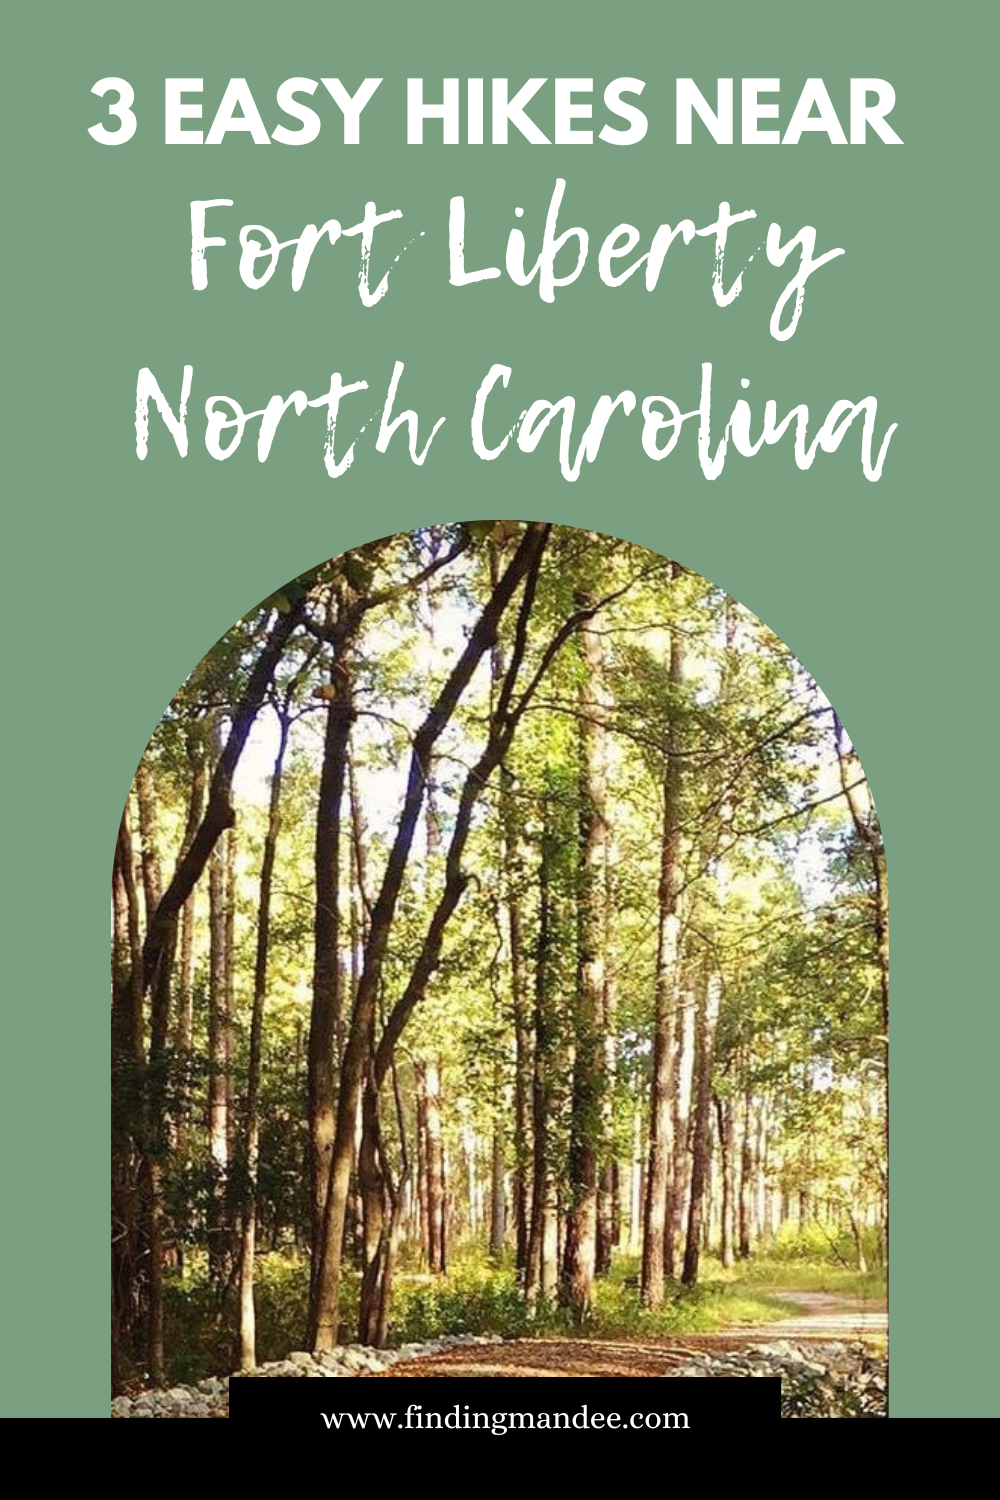 3 Easy Hikes Near Fort Liberty, North Carolina